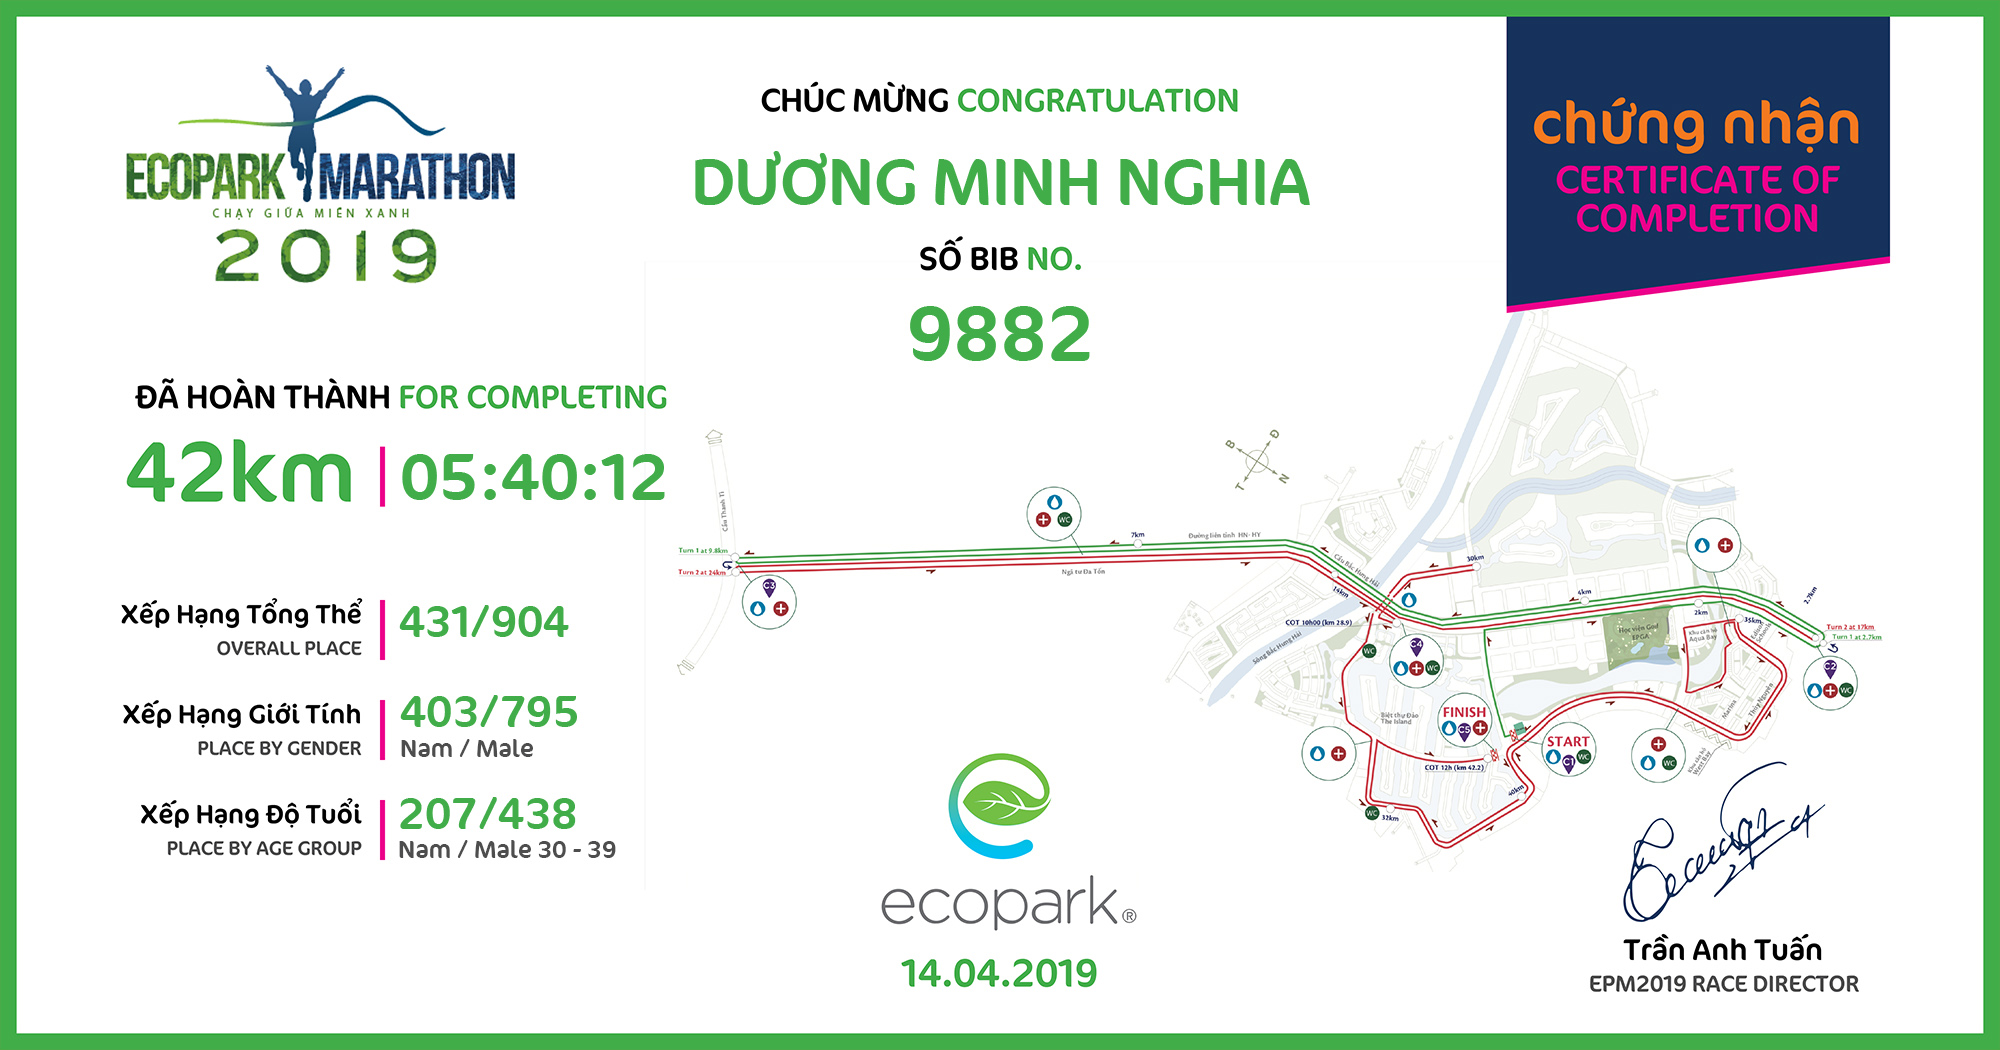 9882 - Dương Minh Nghia